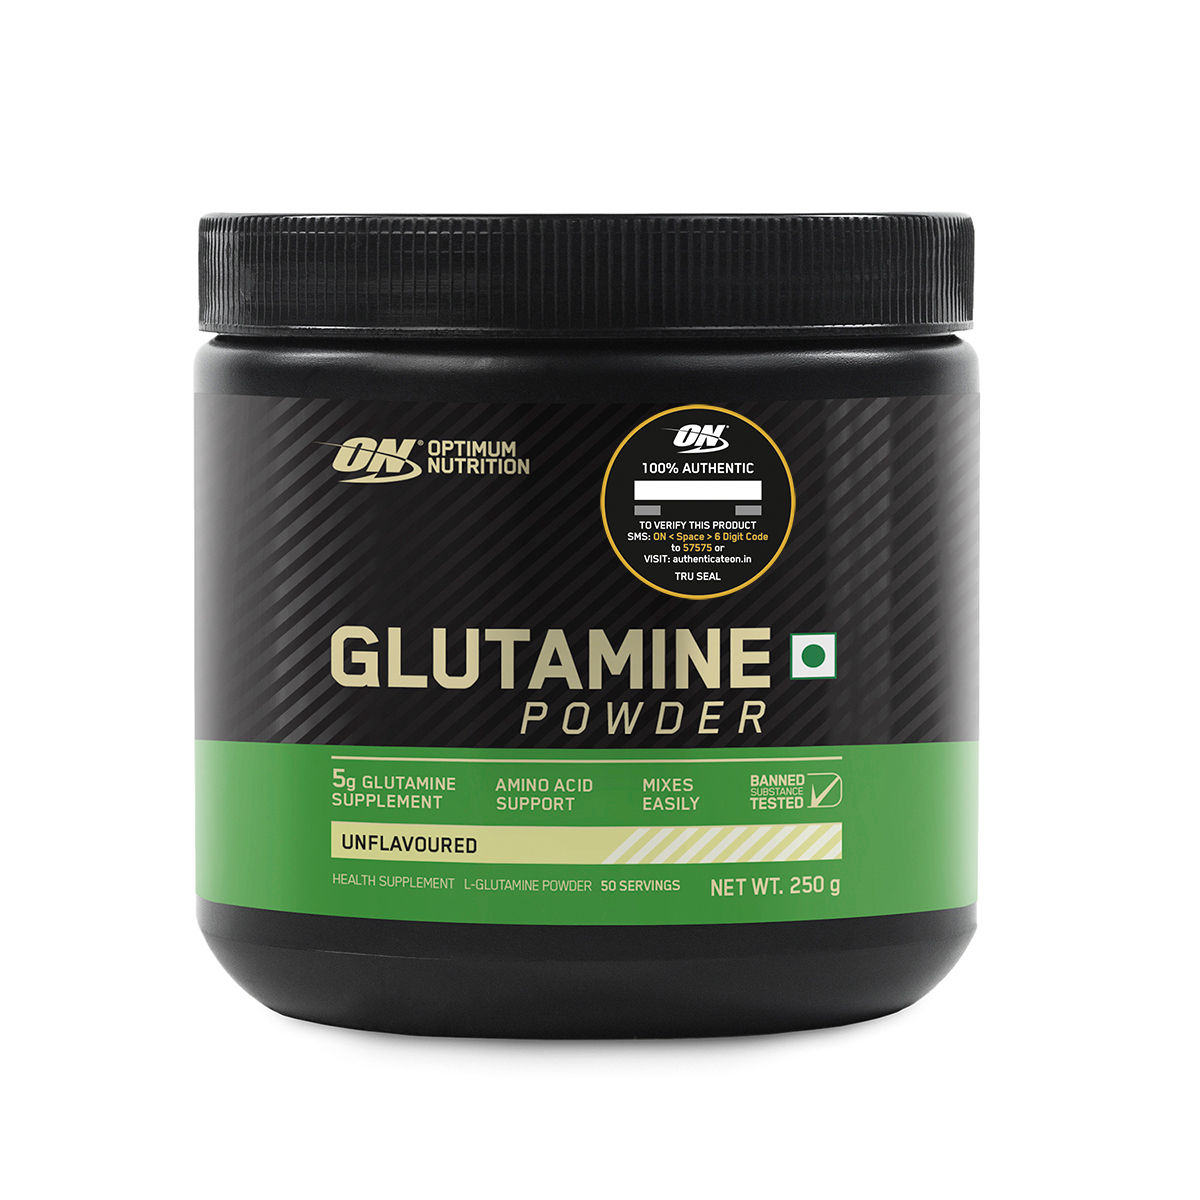 Optimum Nutrition (ON) Glutamine Unflavoured Powder, 250 gm, Pack of 1 